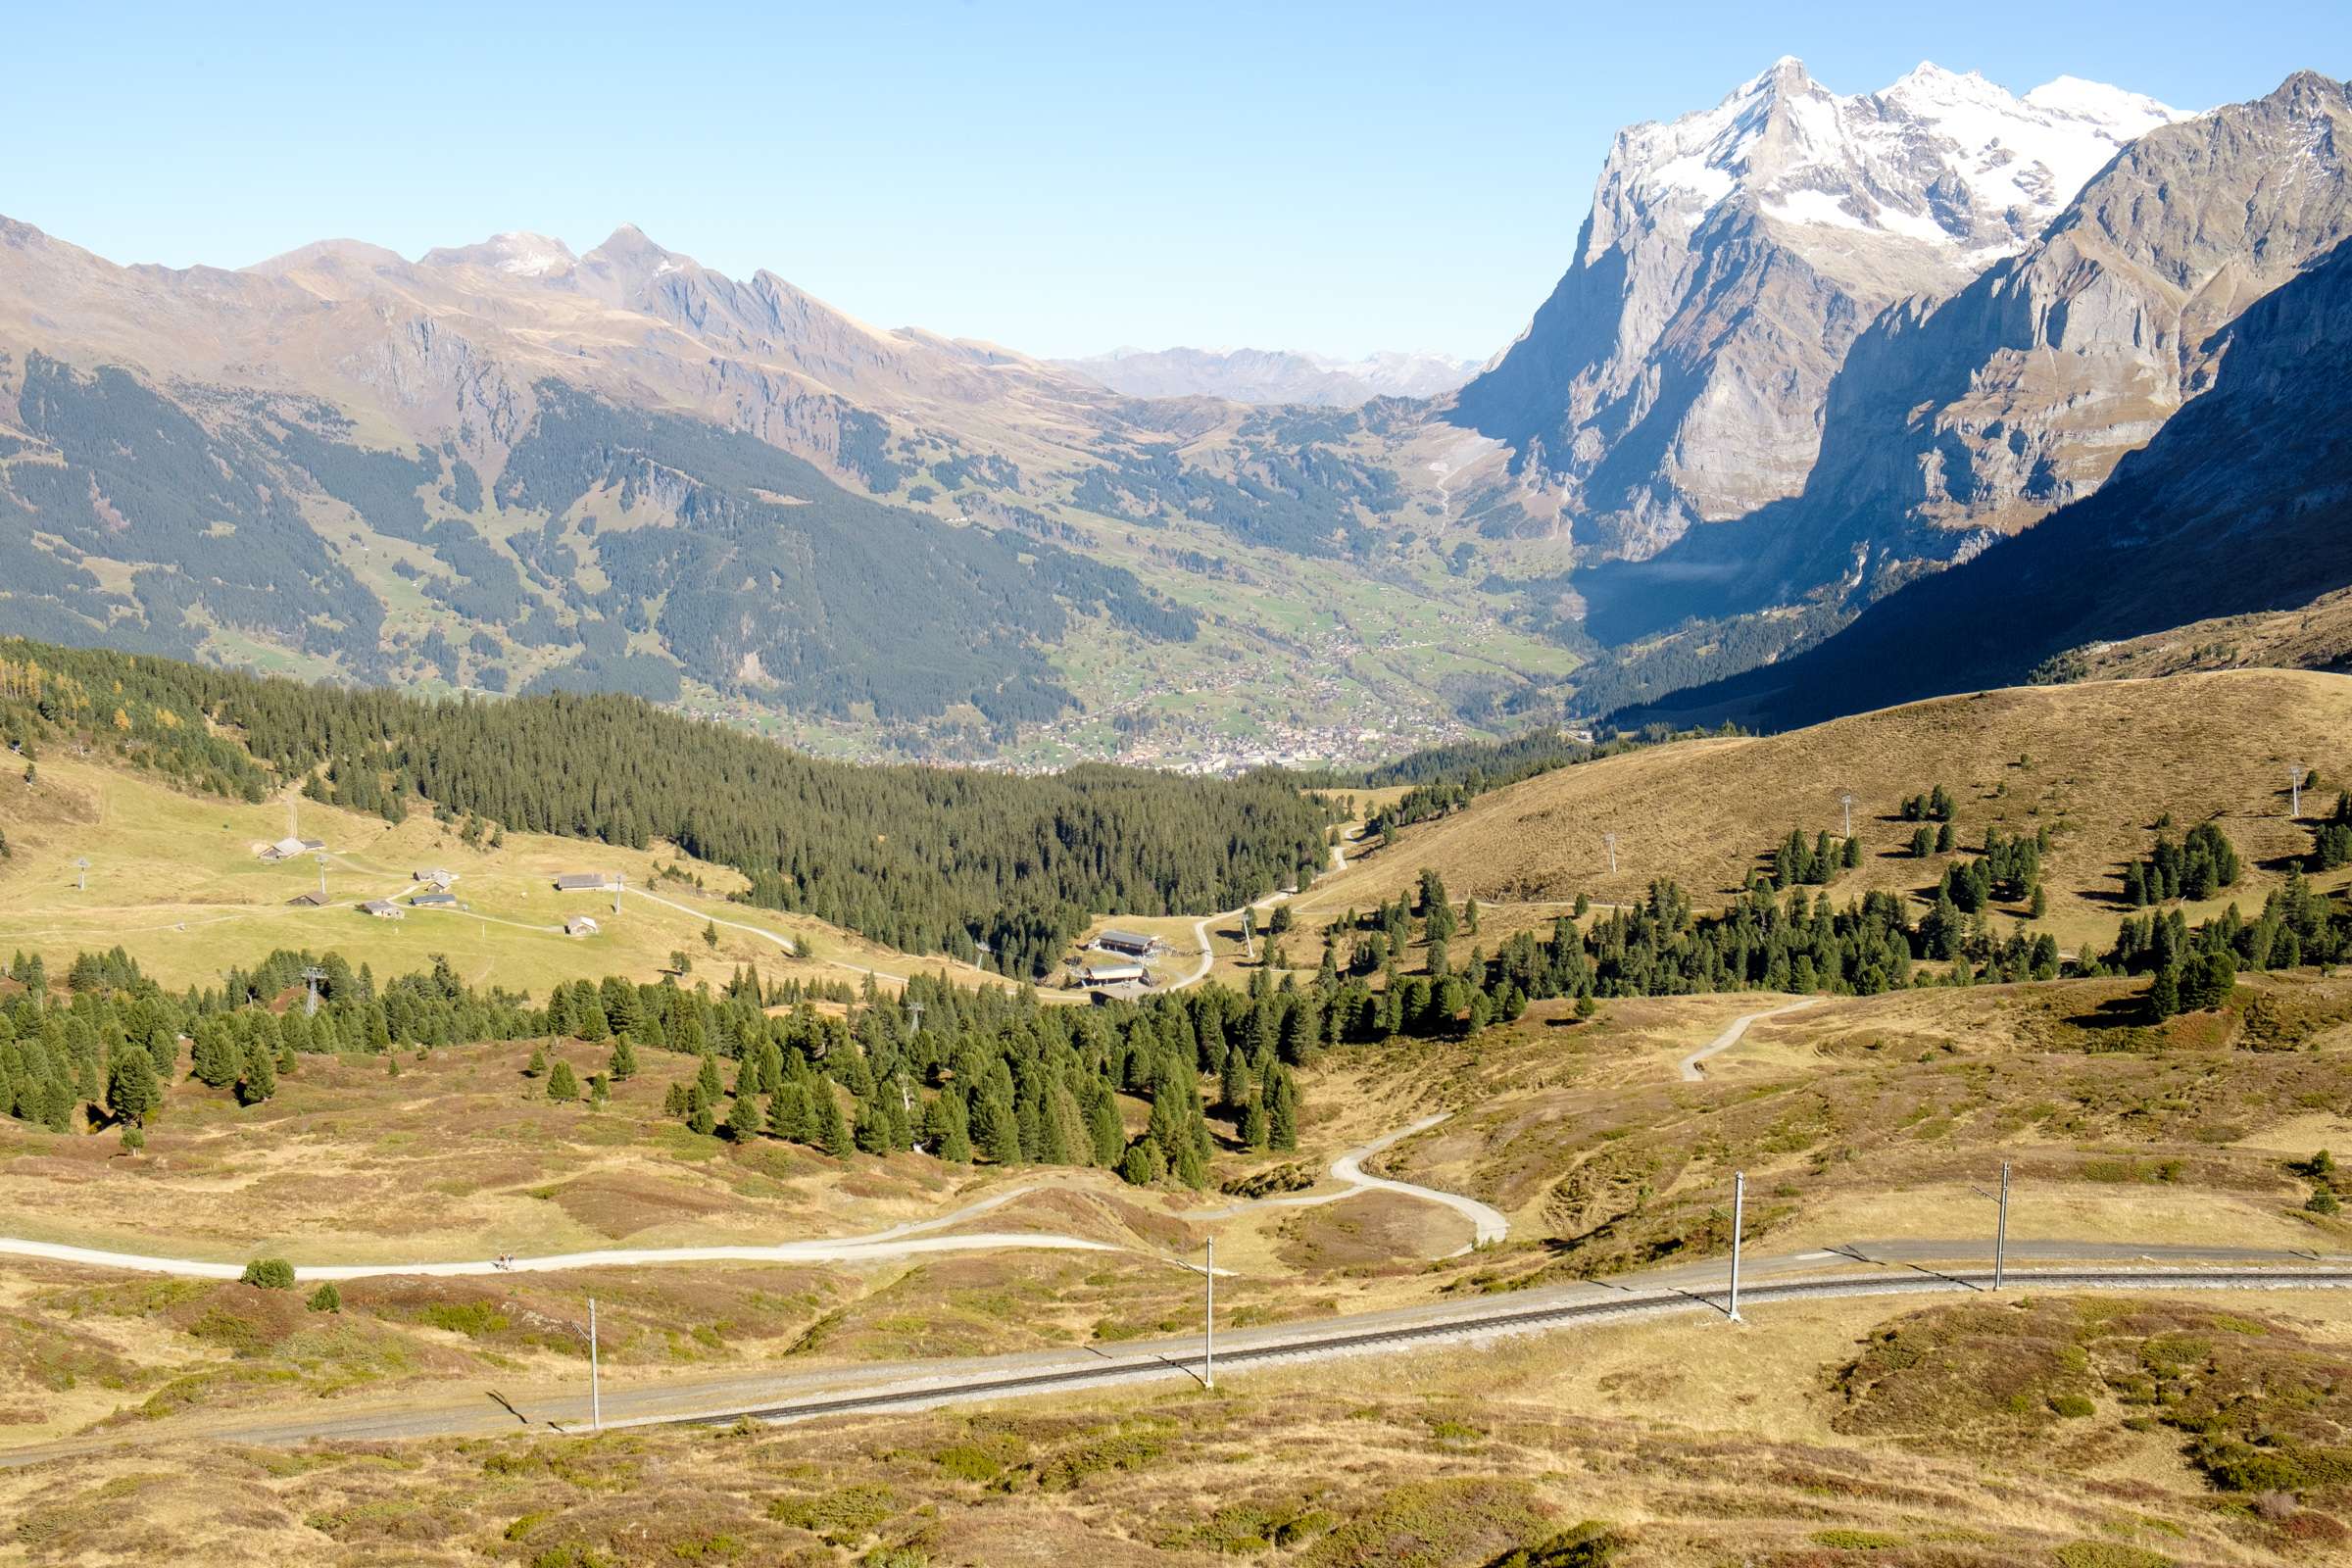 The view of Grindelwald from Kleine Scheidegg